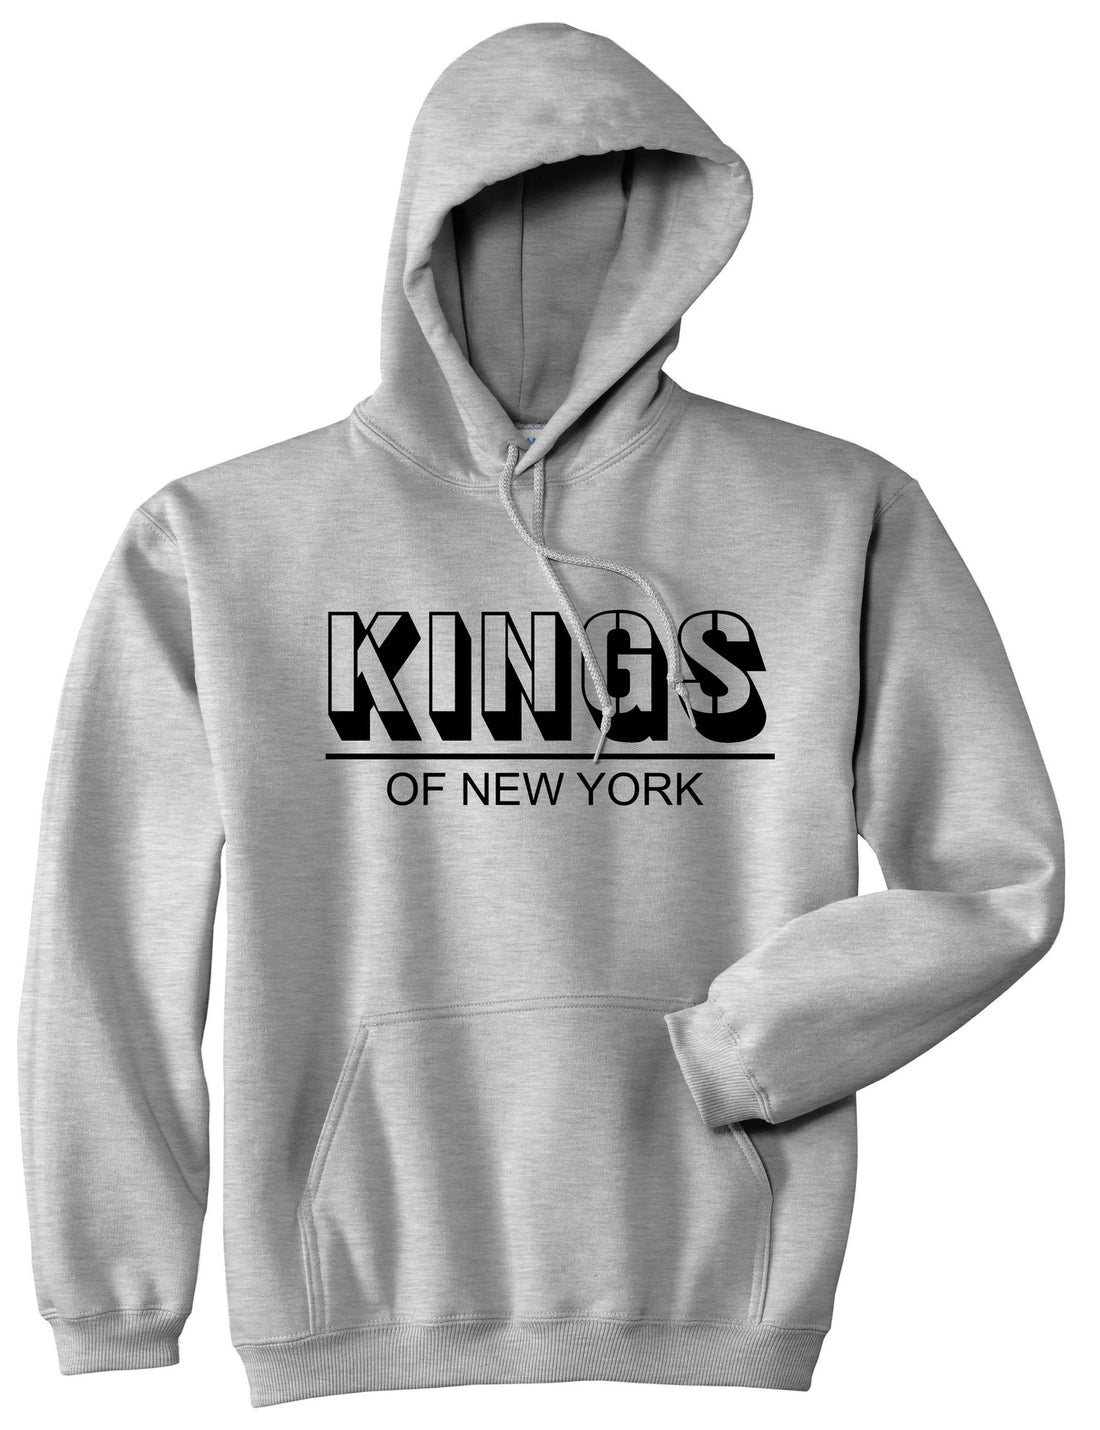 King Branded Block Letters Pullover Hoodie Hoody in Grey by Kings Of NY